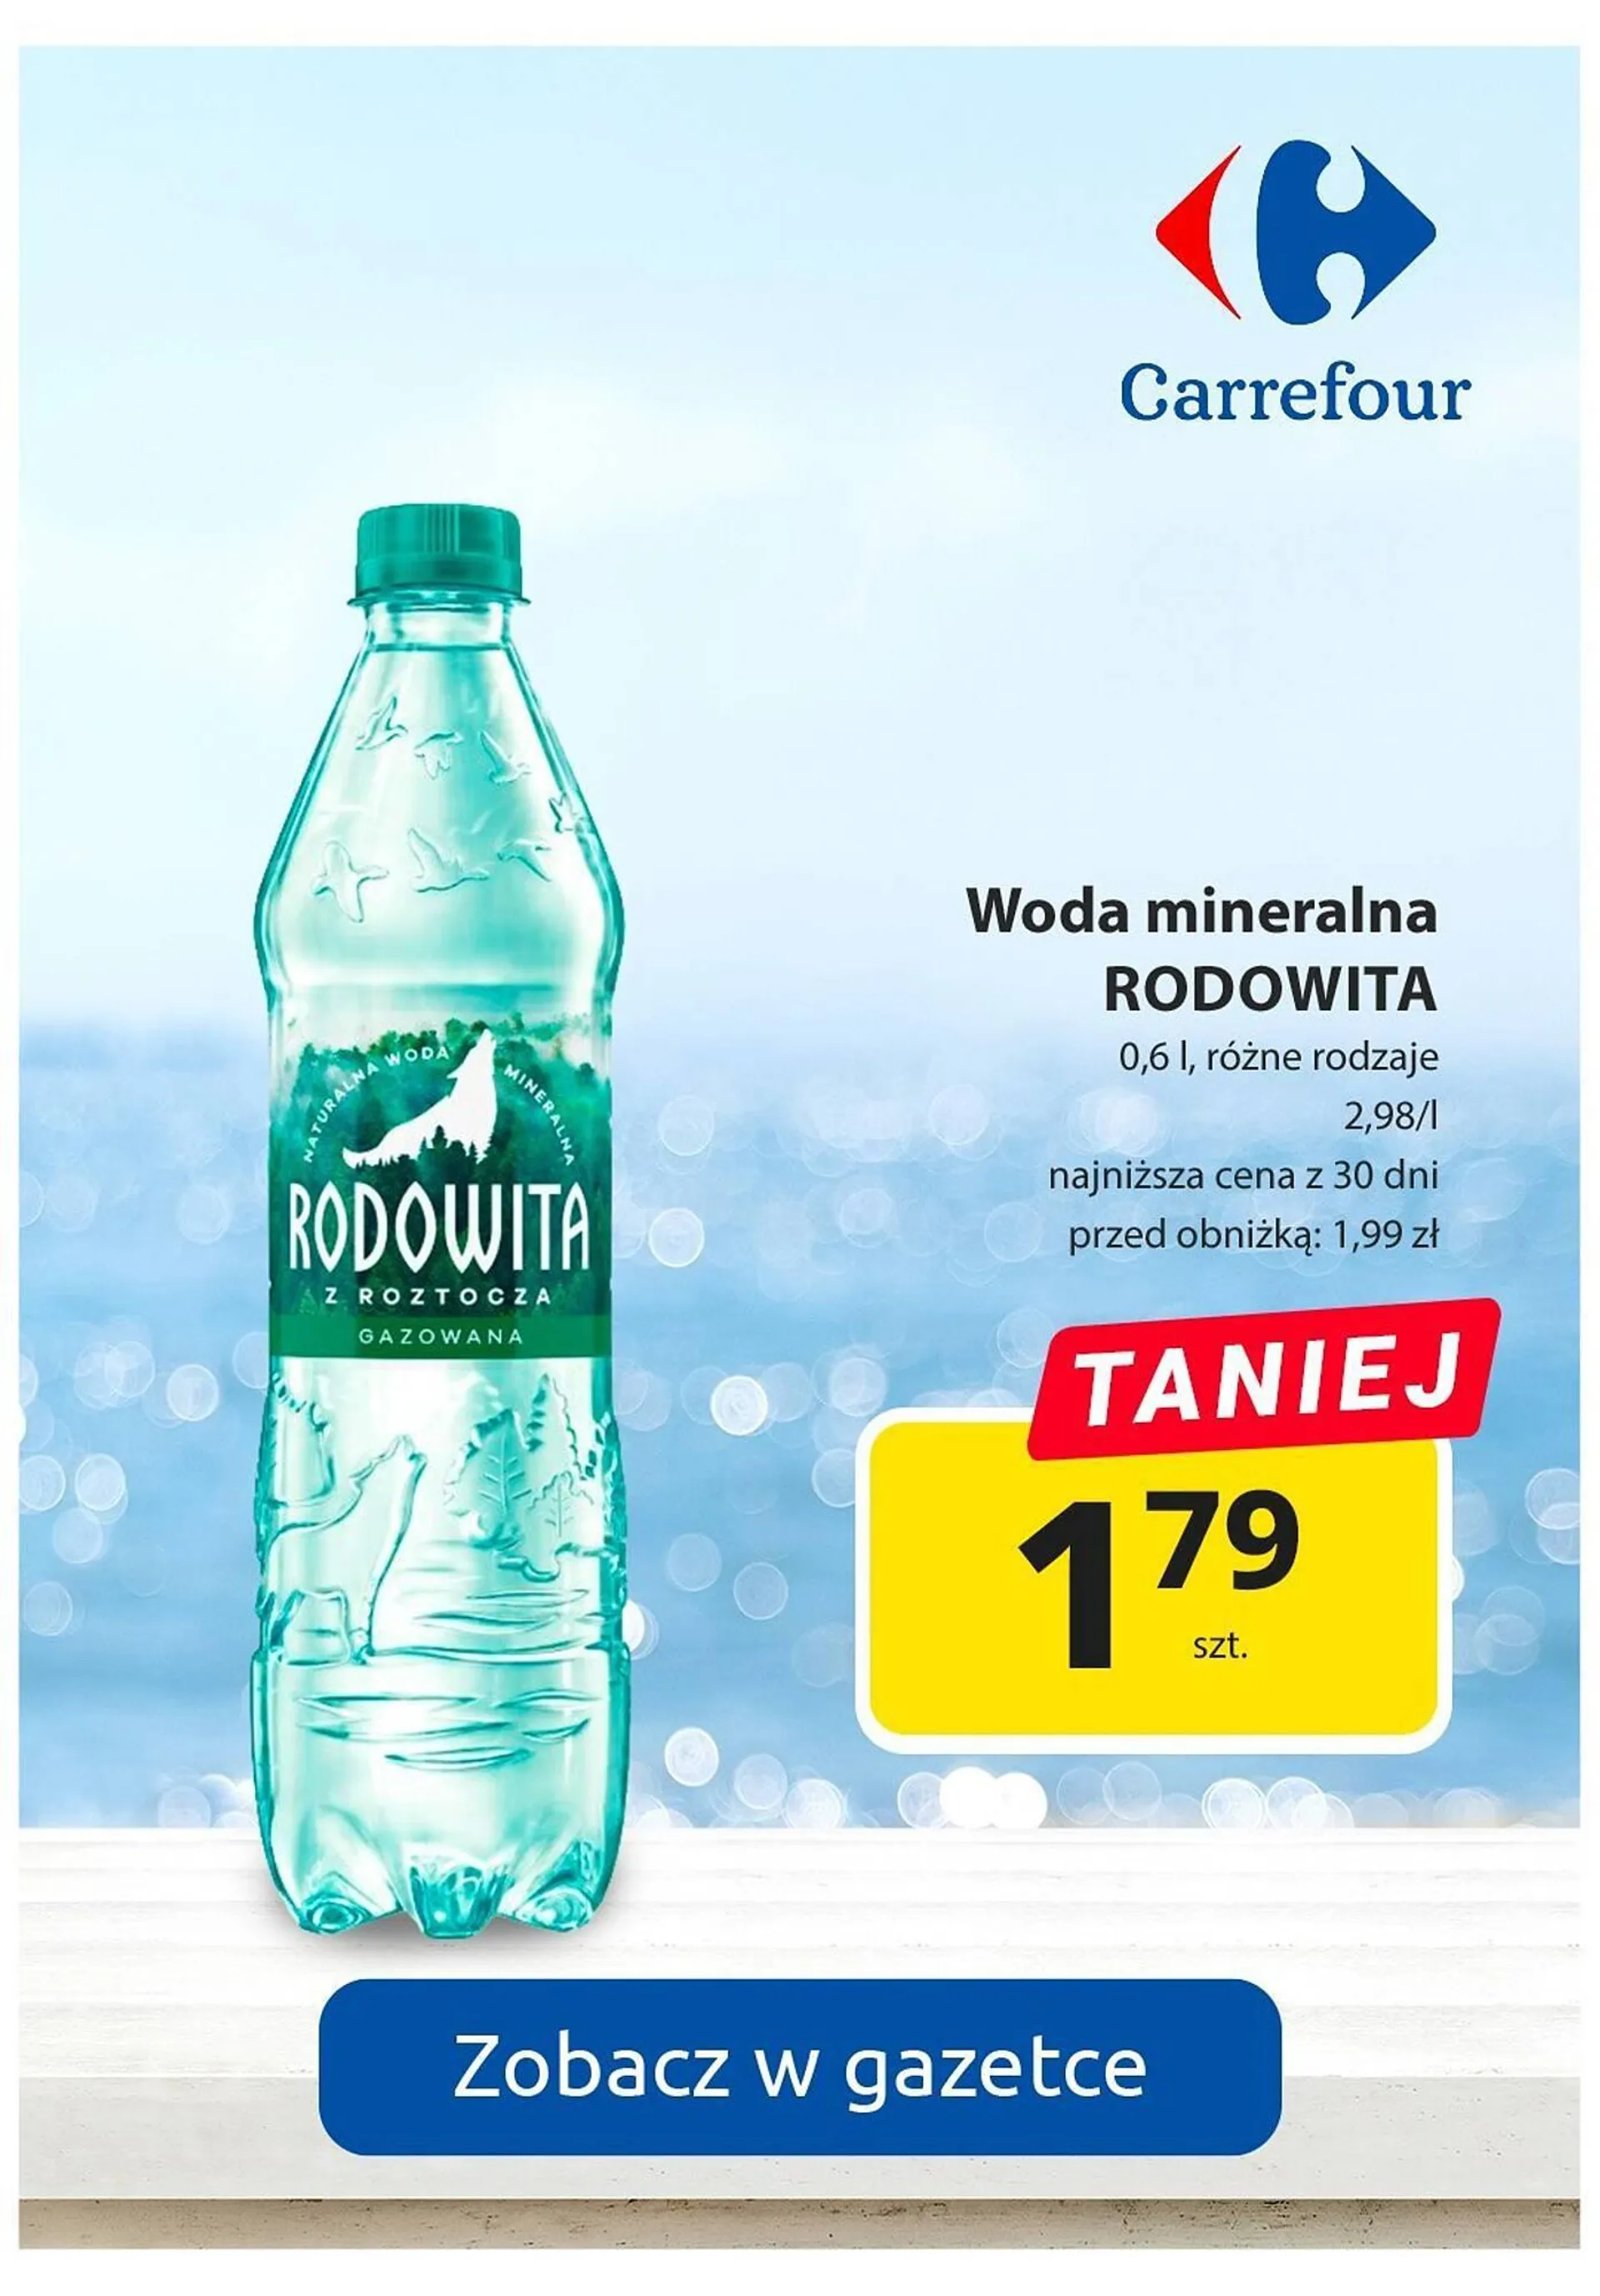 Carrefour gazetka - 10